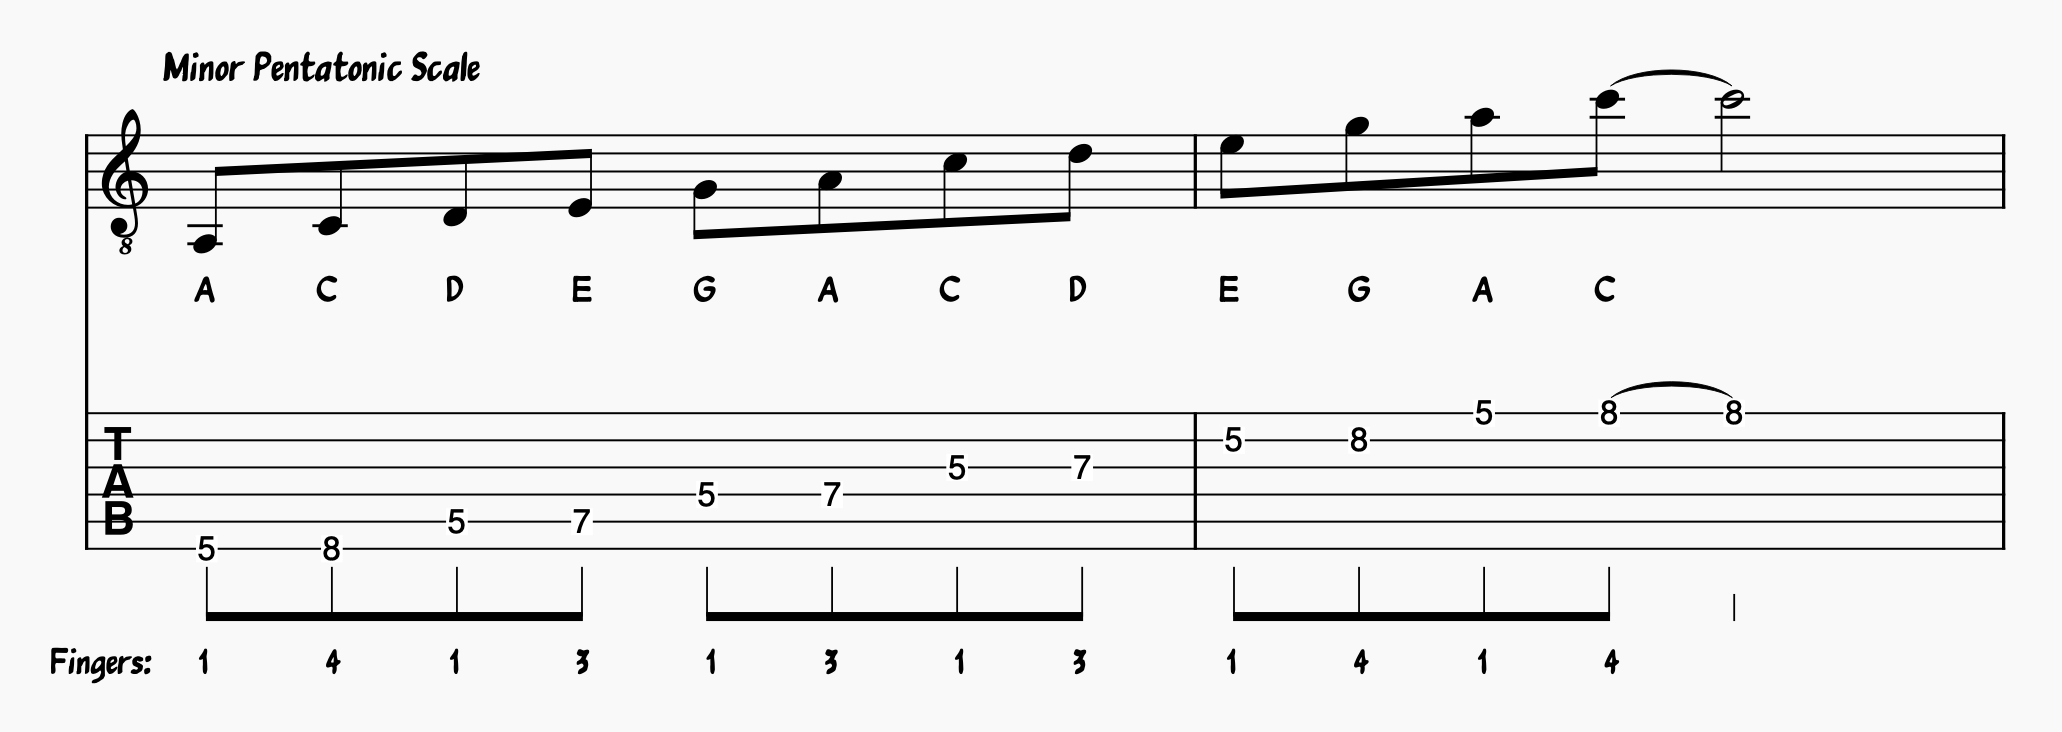 Minor Pentatonic Scale on Guitar